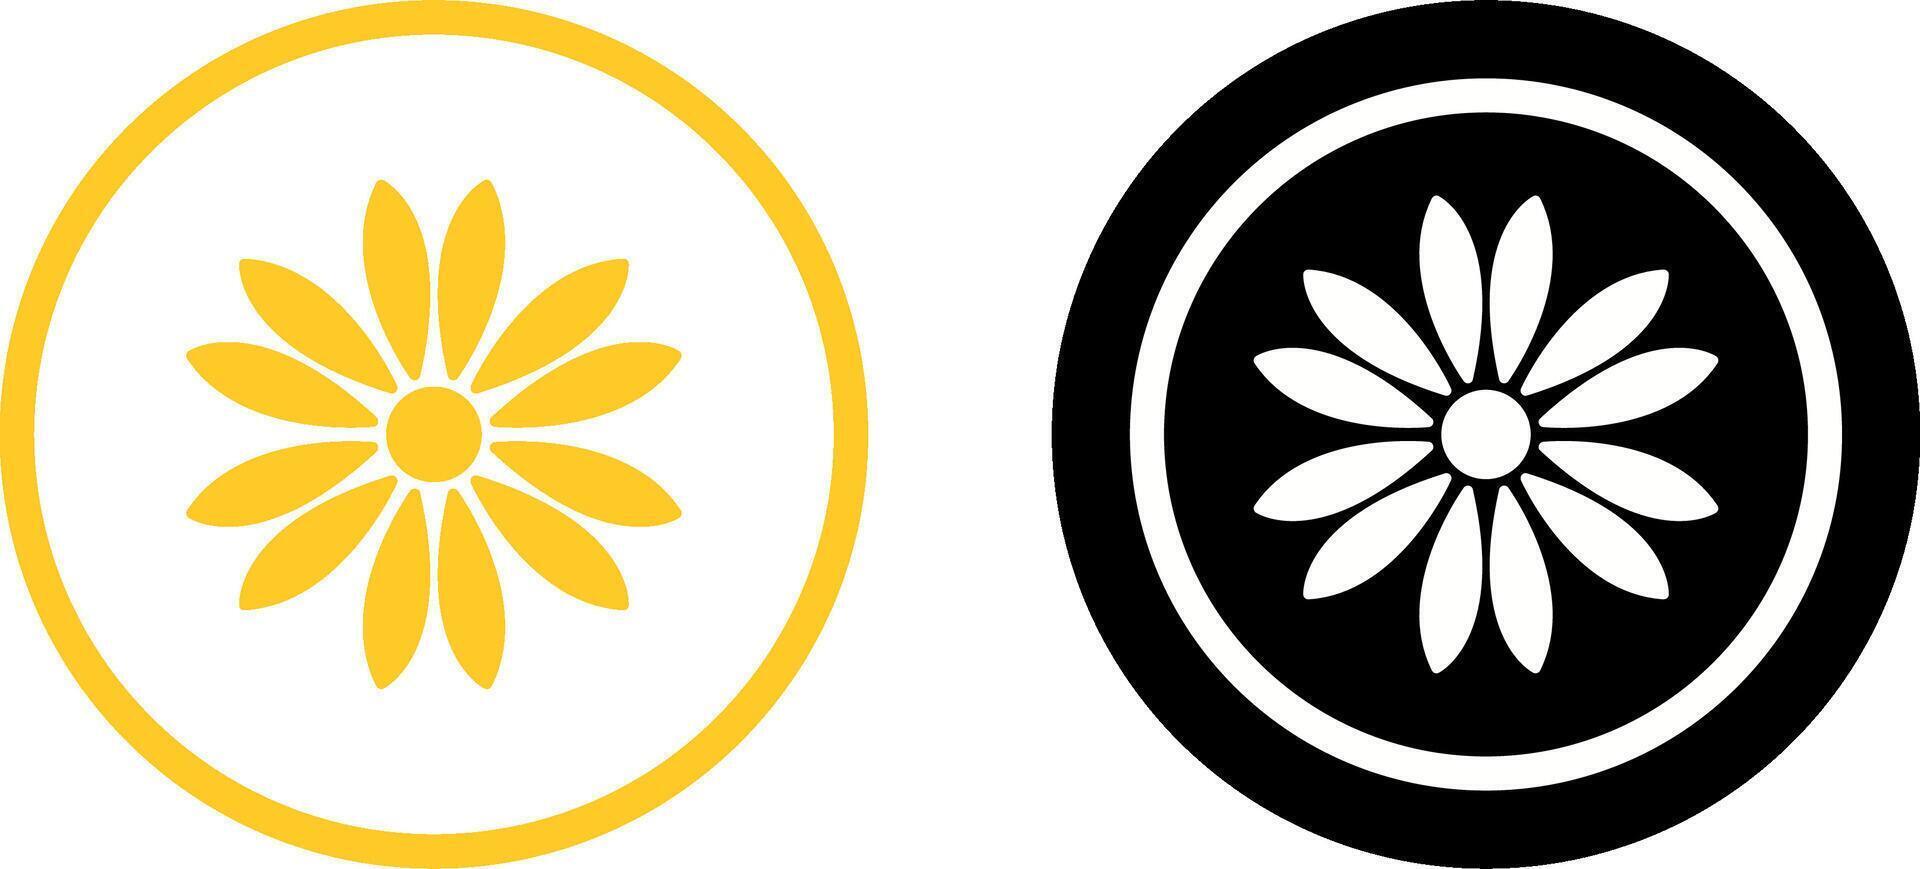 uniek bloem icoon ontwerp vector